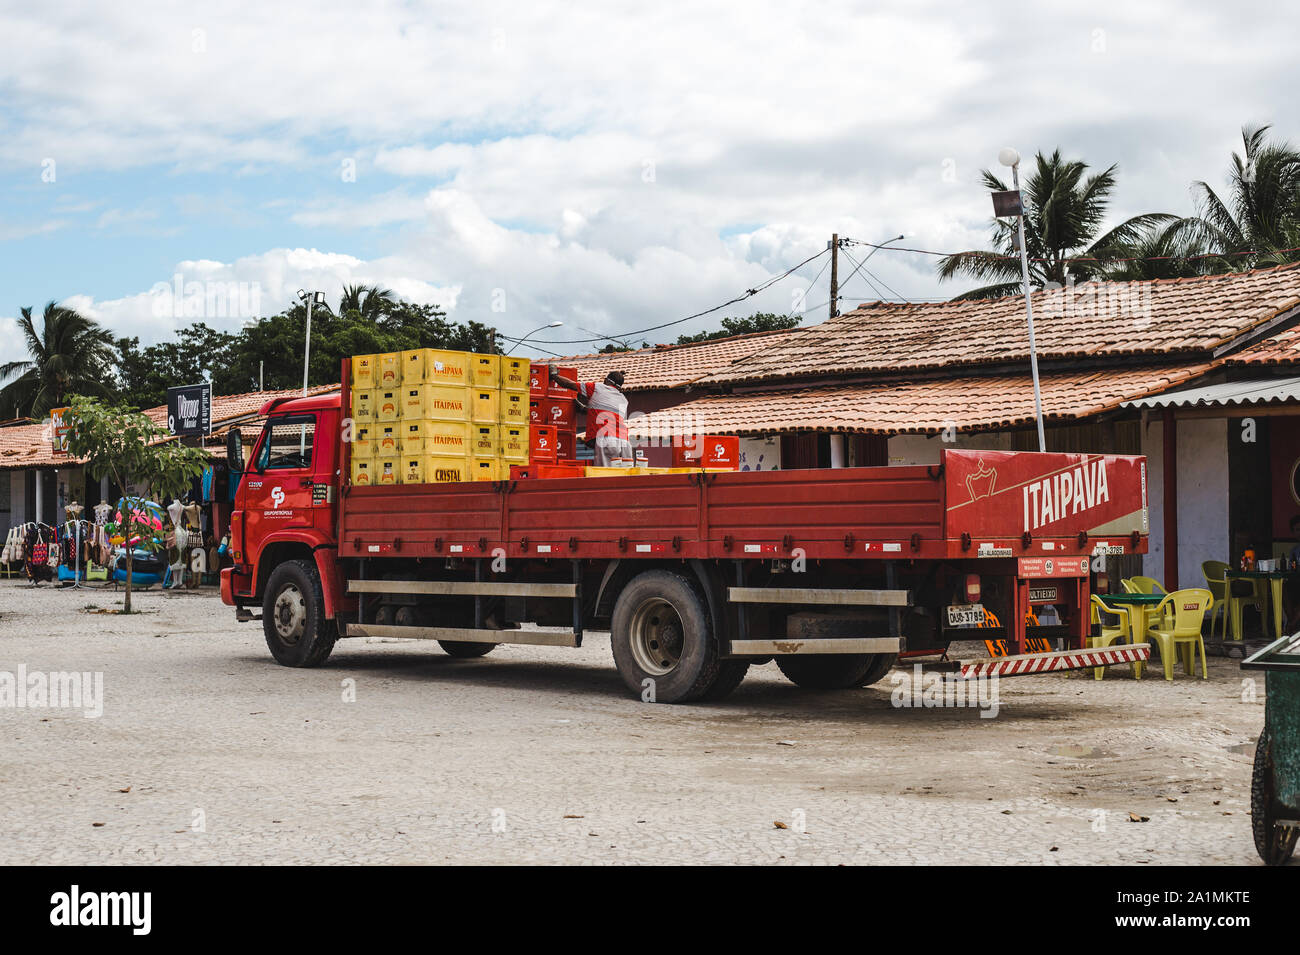 Chauffeur de camion de livraison fournissant de la bière Itaipava et emportant des bouteilles de bière en verre usagées à recycler à Bahia, au nord-est du Brésil Banque D'Images